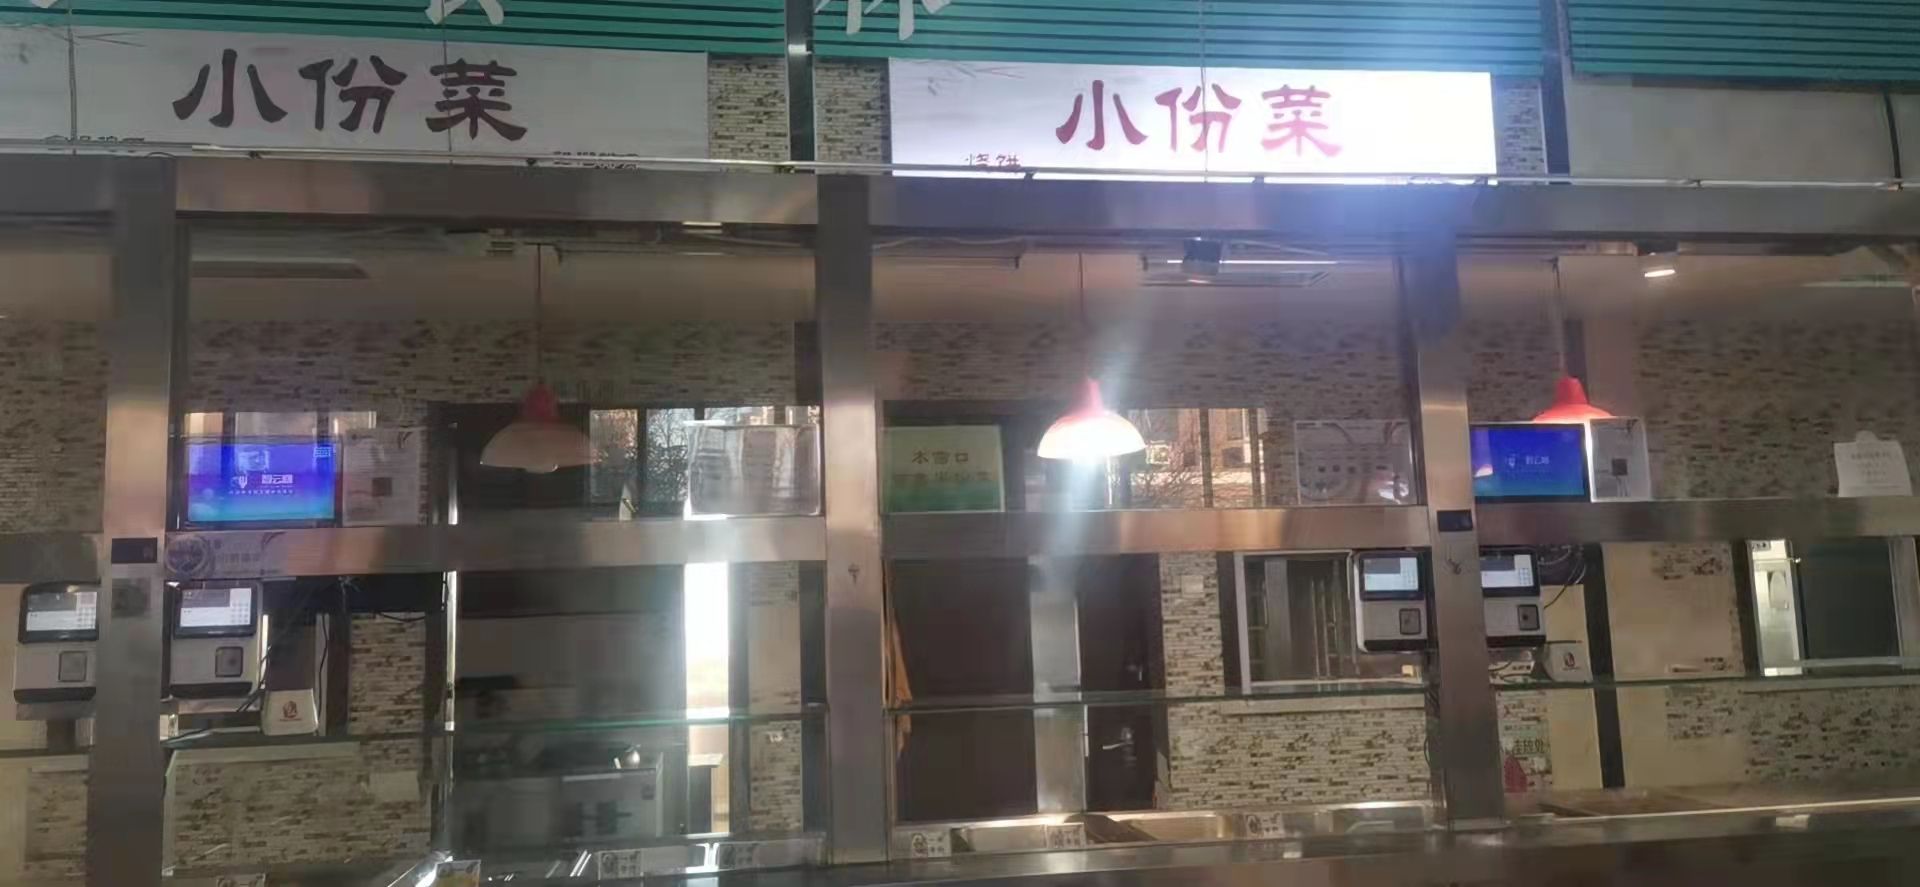 天津商业大学第一食堂大锅菜主窗口转让